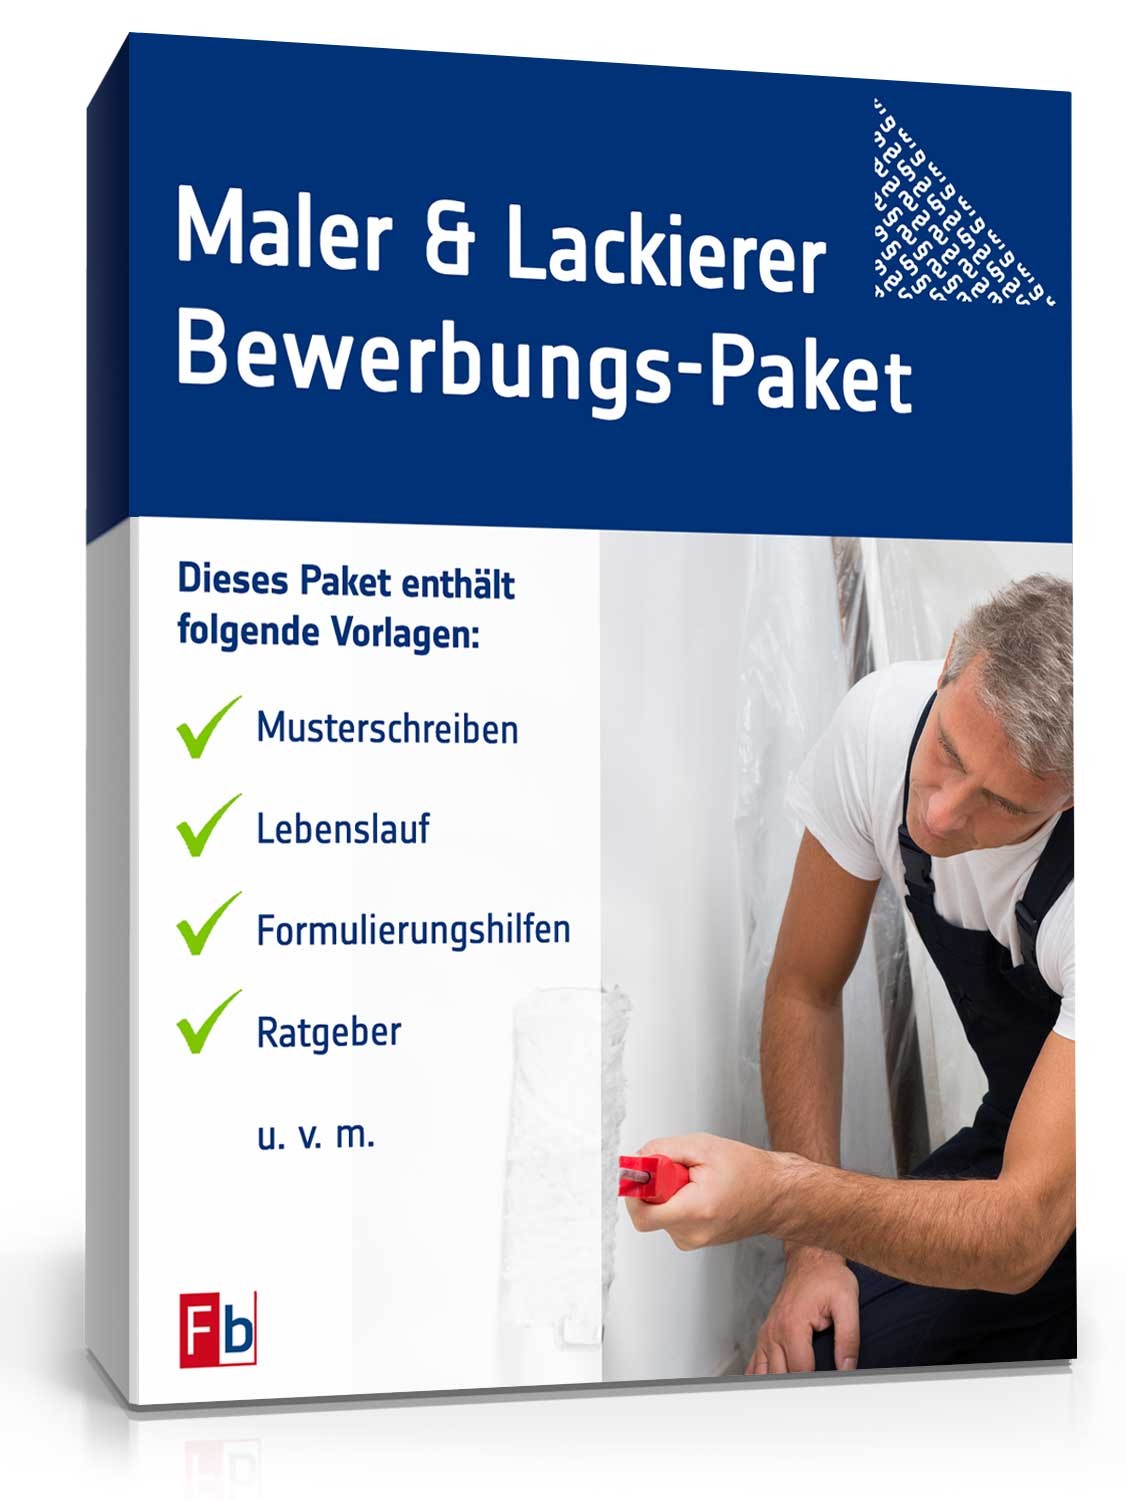 Hauptbild des Produkts: Bewerbungs-Paket Maler und Lackierer